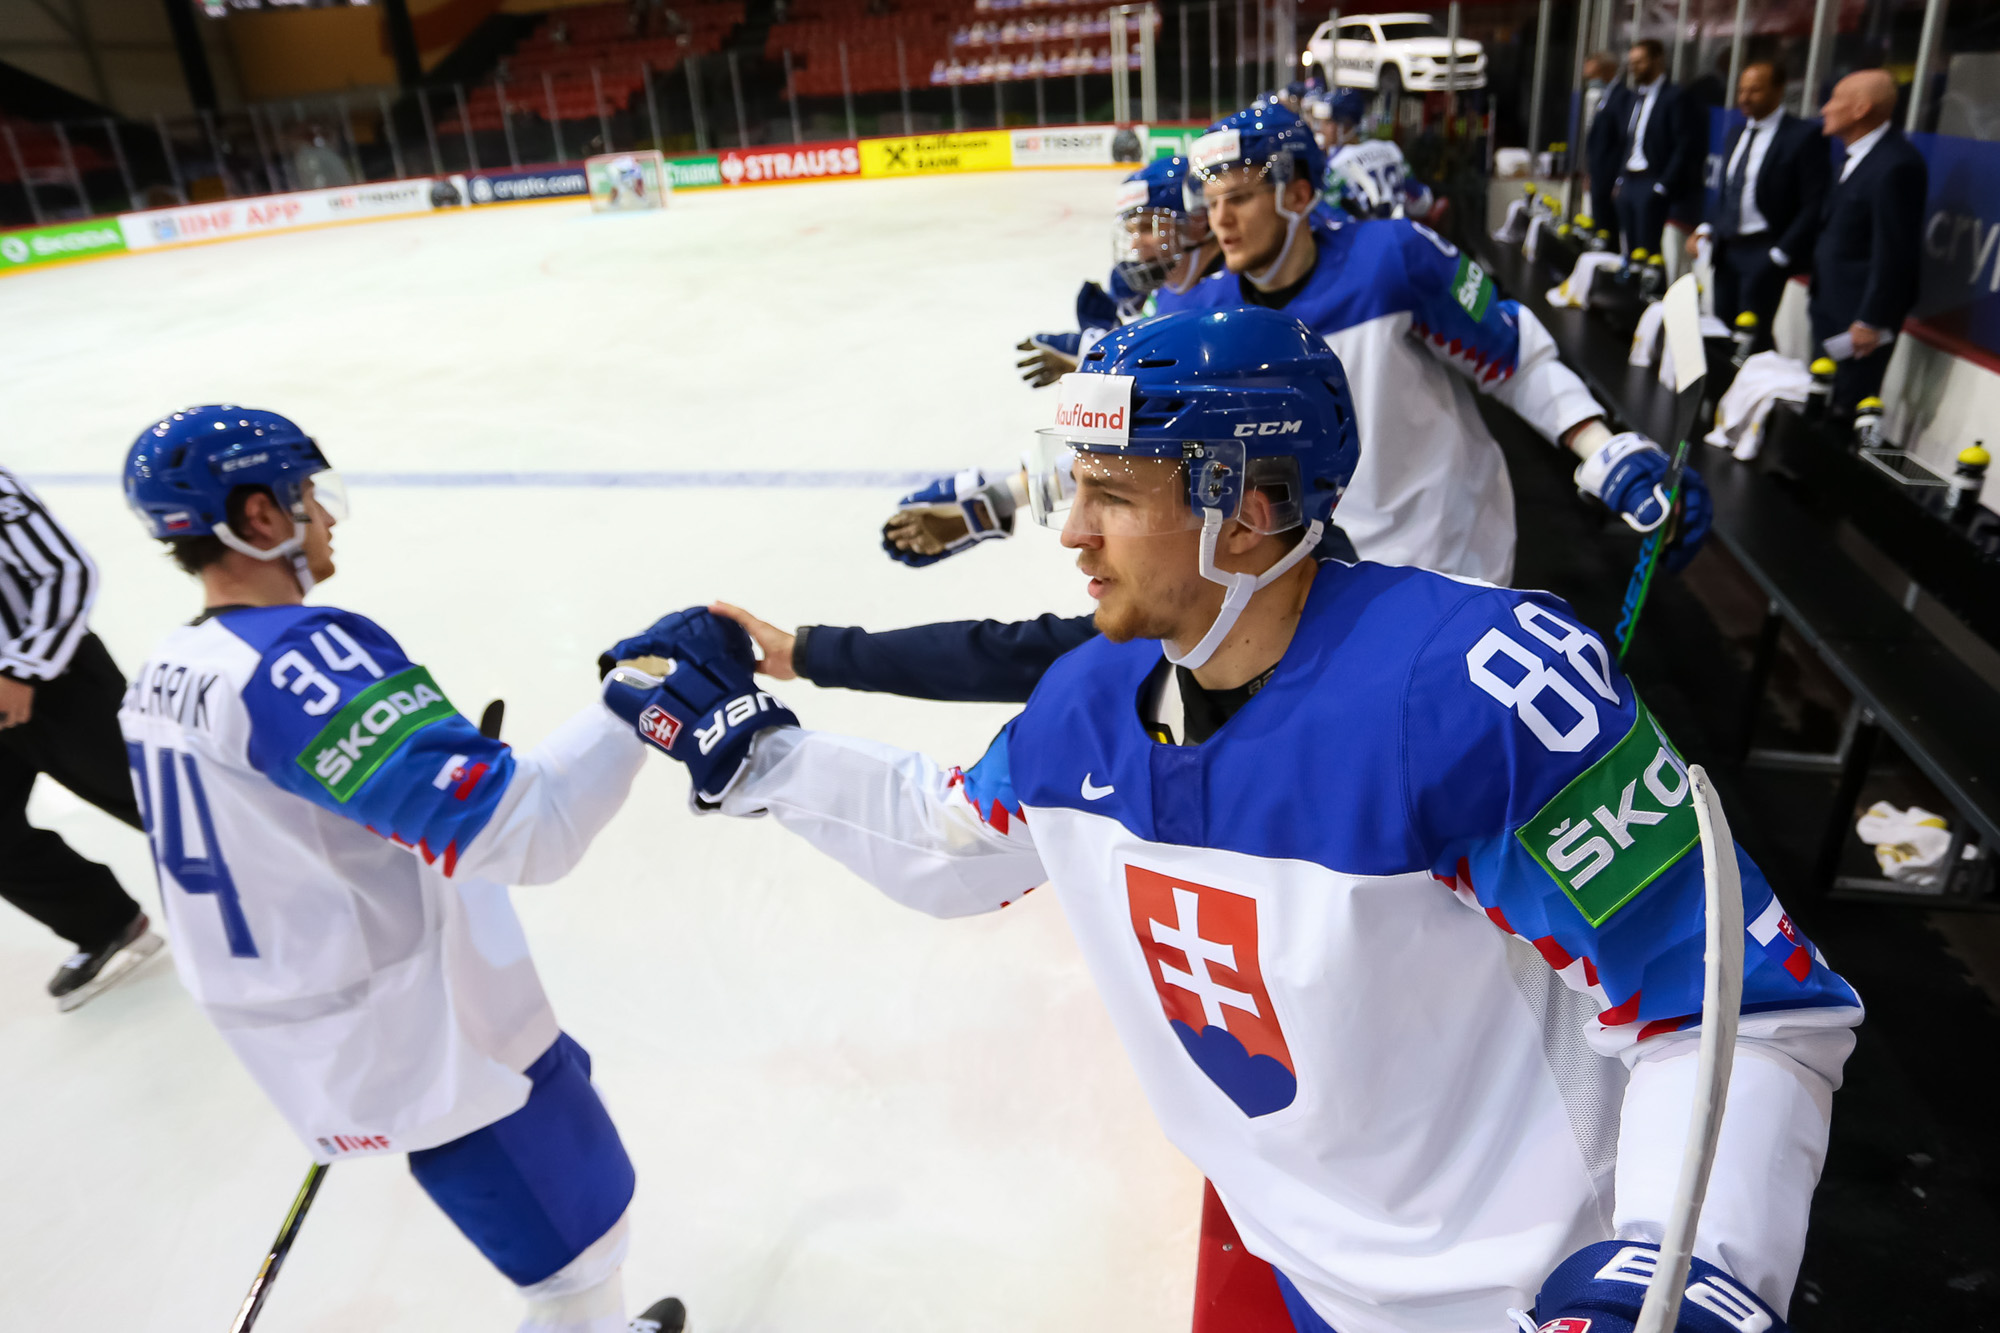 IIHF - Gallery: Belarus vs Slovakia - 2021 IIHF Ice Hockey World Championship